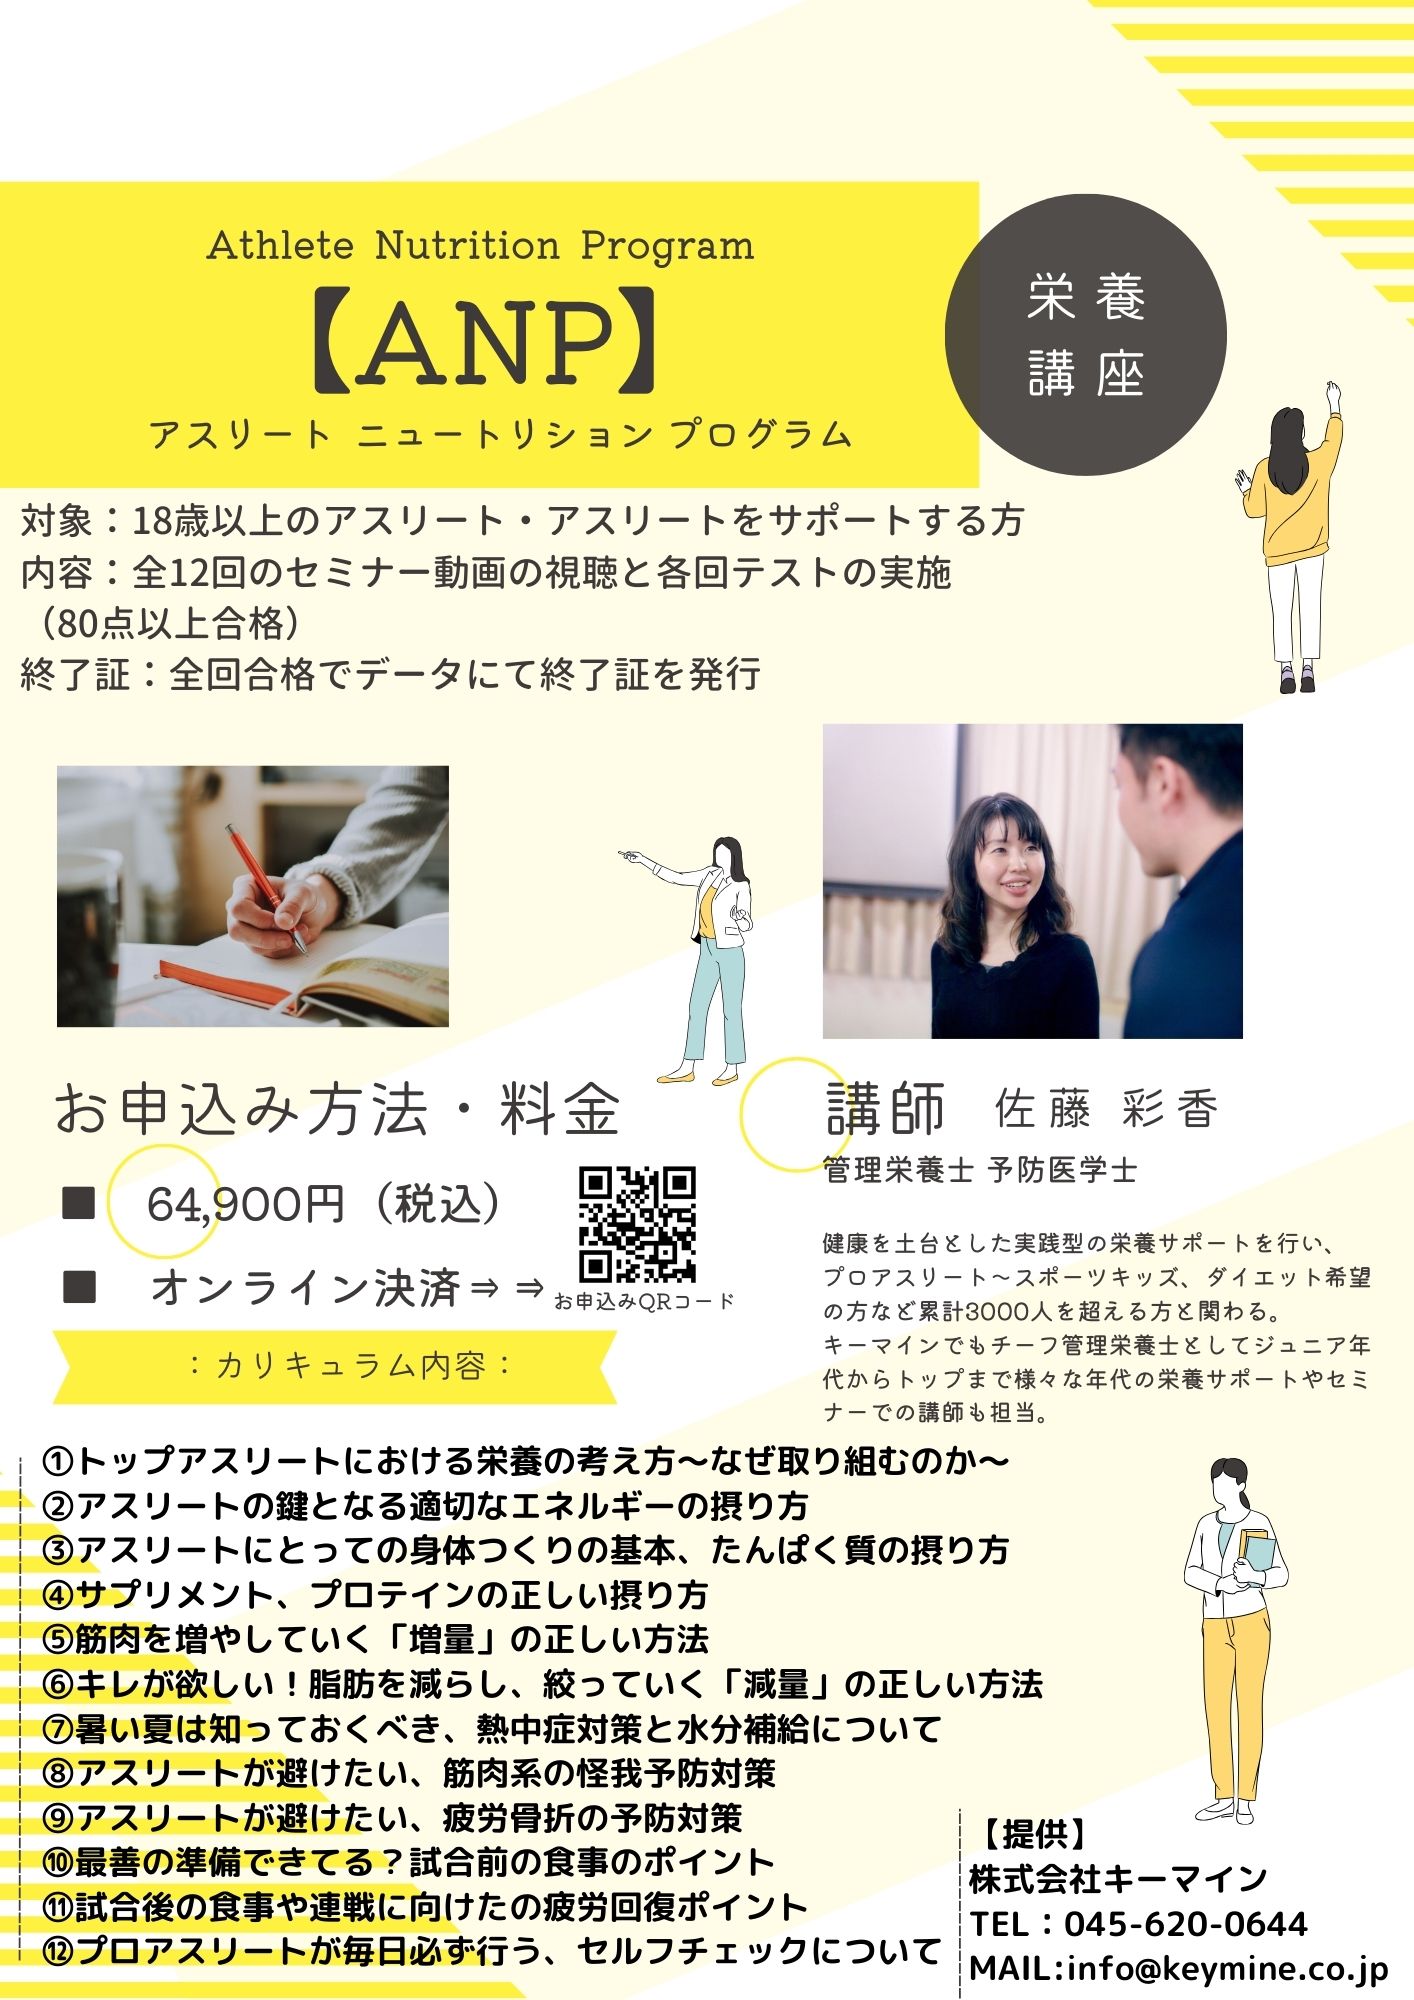 【ANP】アスリートニュートリションプログラム栄養講座